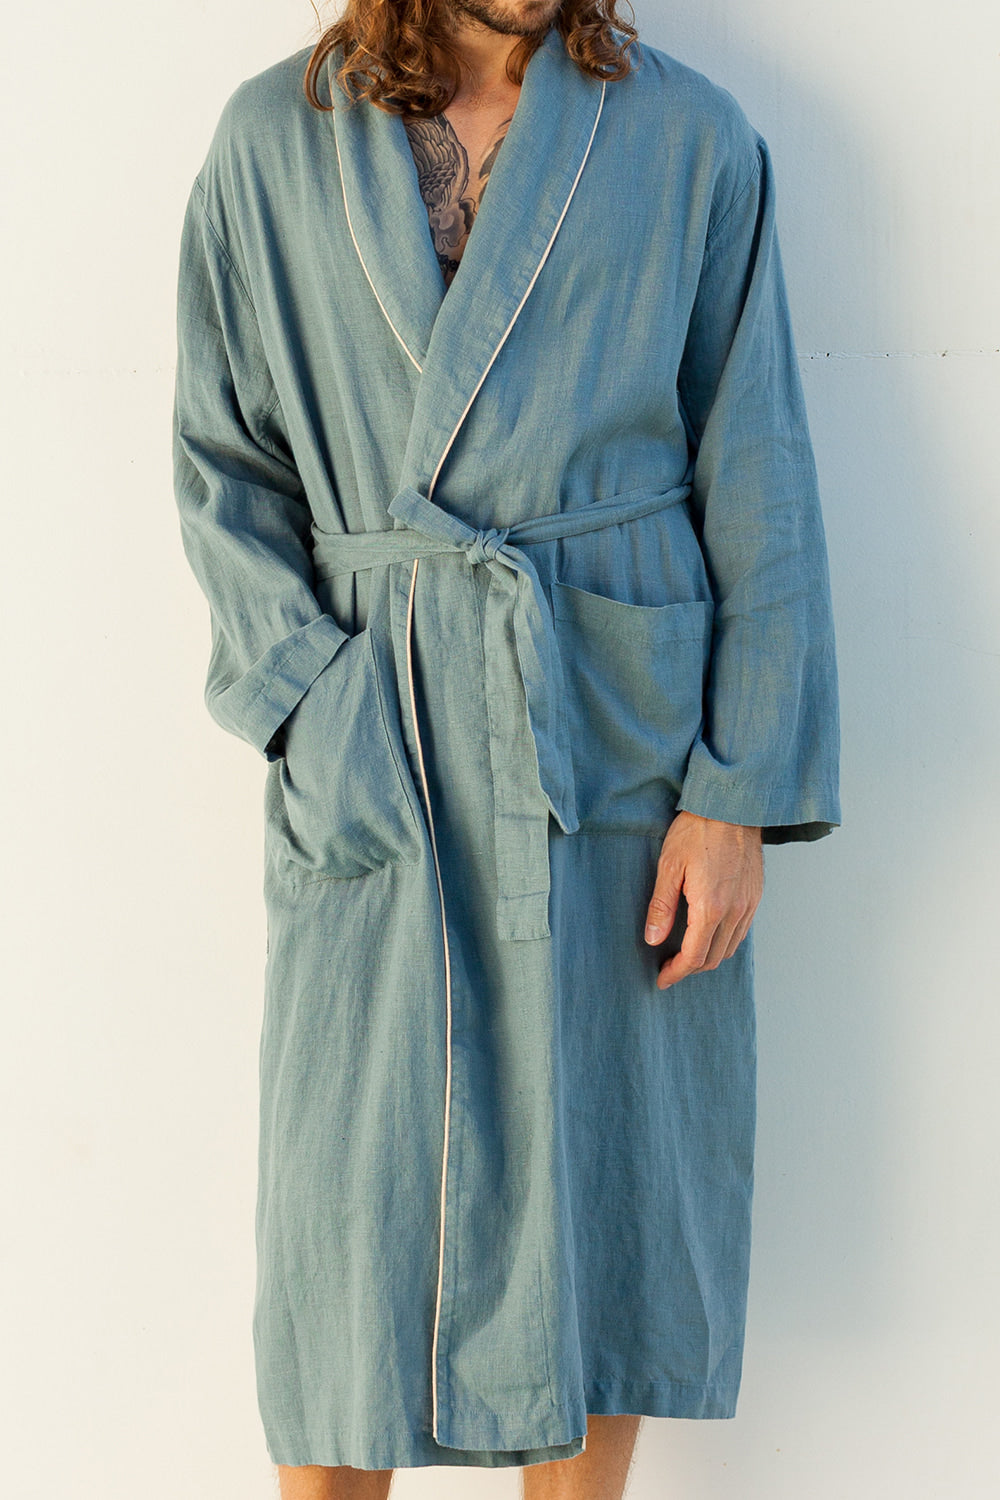 DANDELION men's linen robe